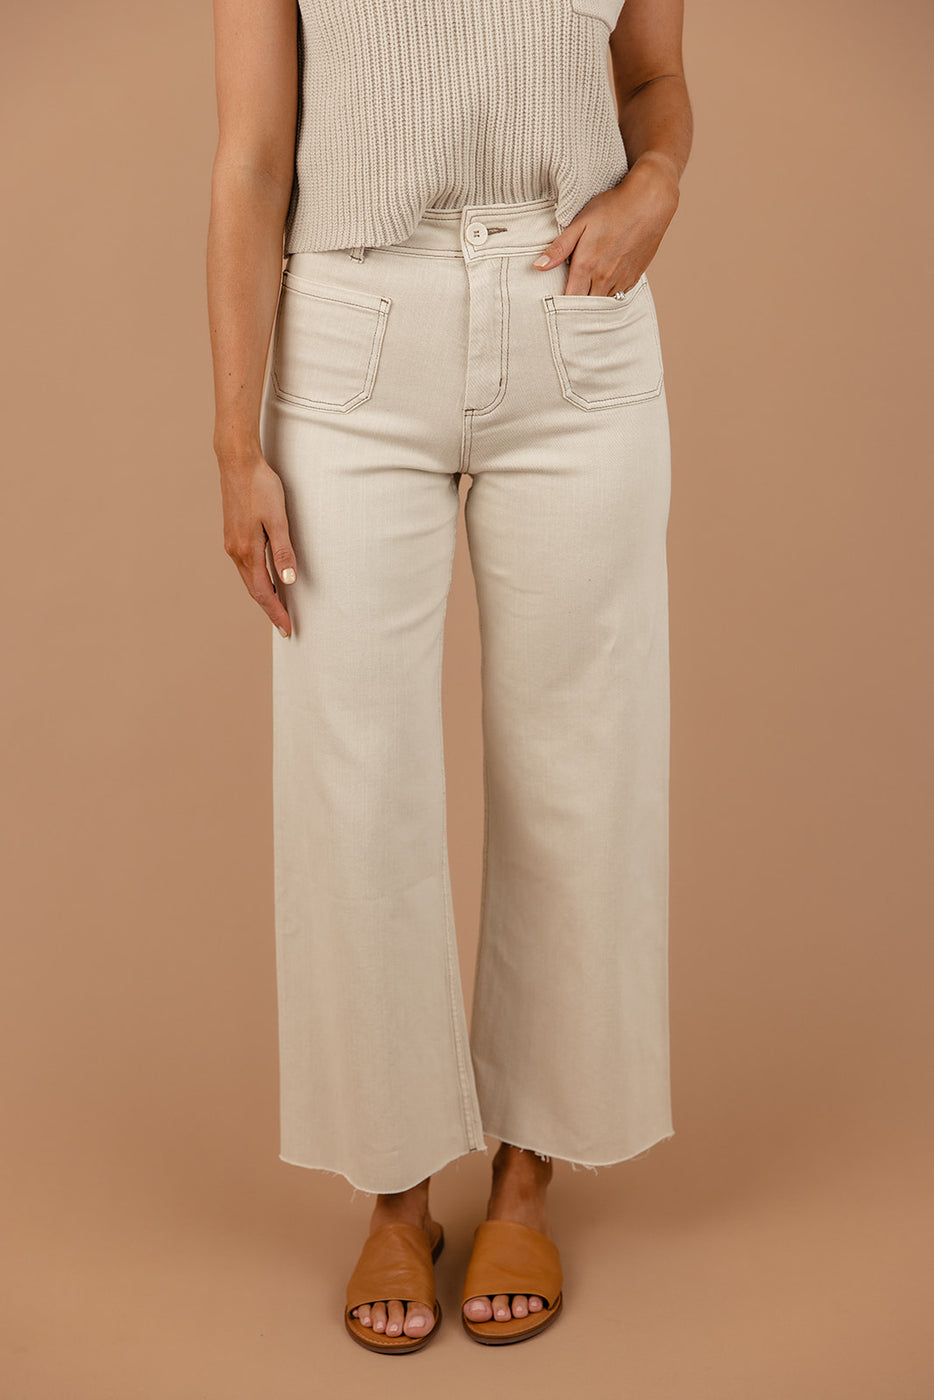 a woman wearing white pants